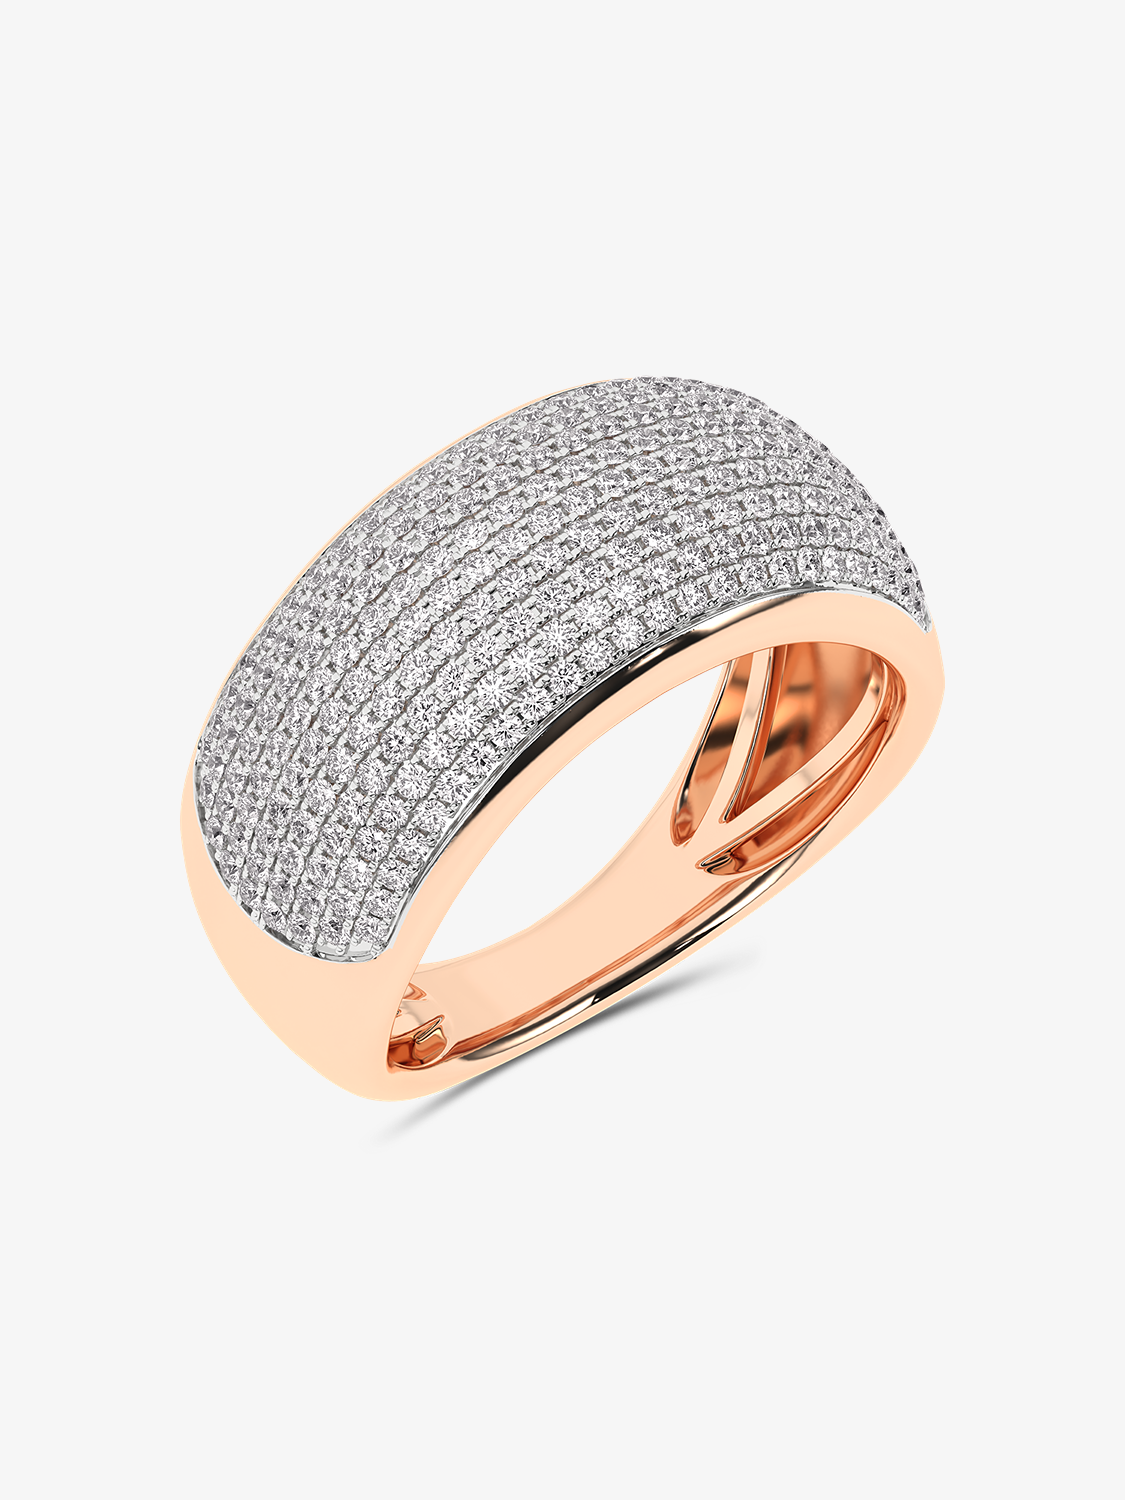 Złoty pierścionek Pavé z brylantami - Księżniczka Różowy - Venetia Jewels - 14K złoto z brylantami